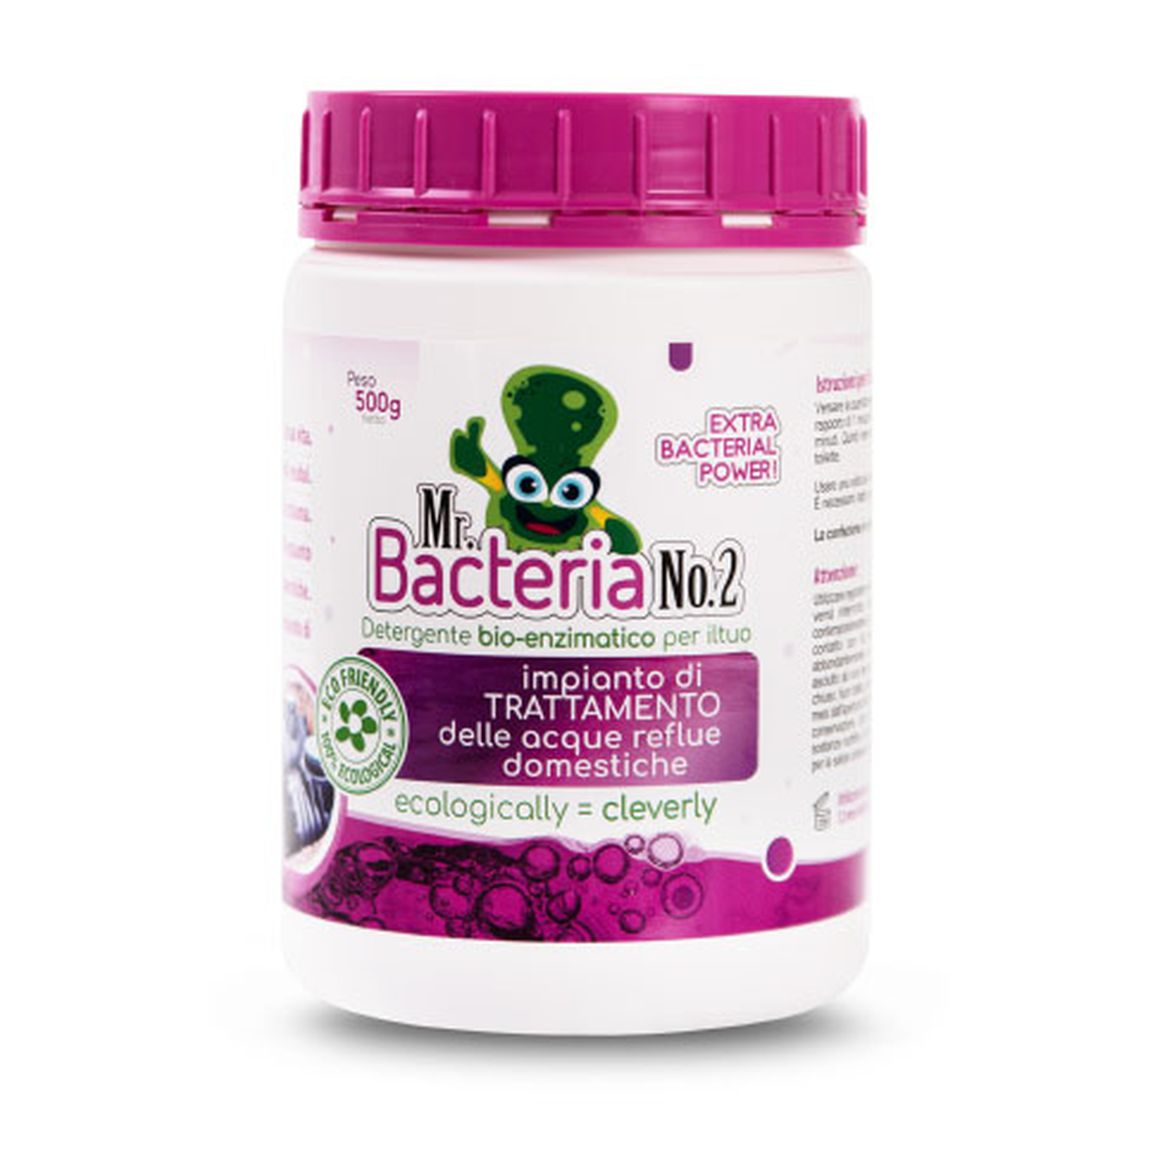 Mr. Bacteria No.2 Detergente bio-enzimatico per il tuo